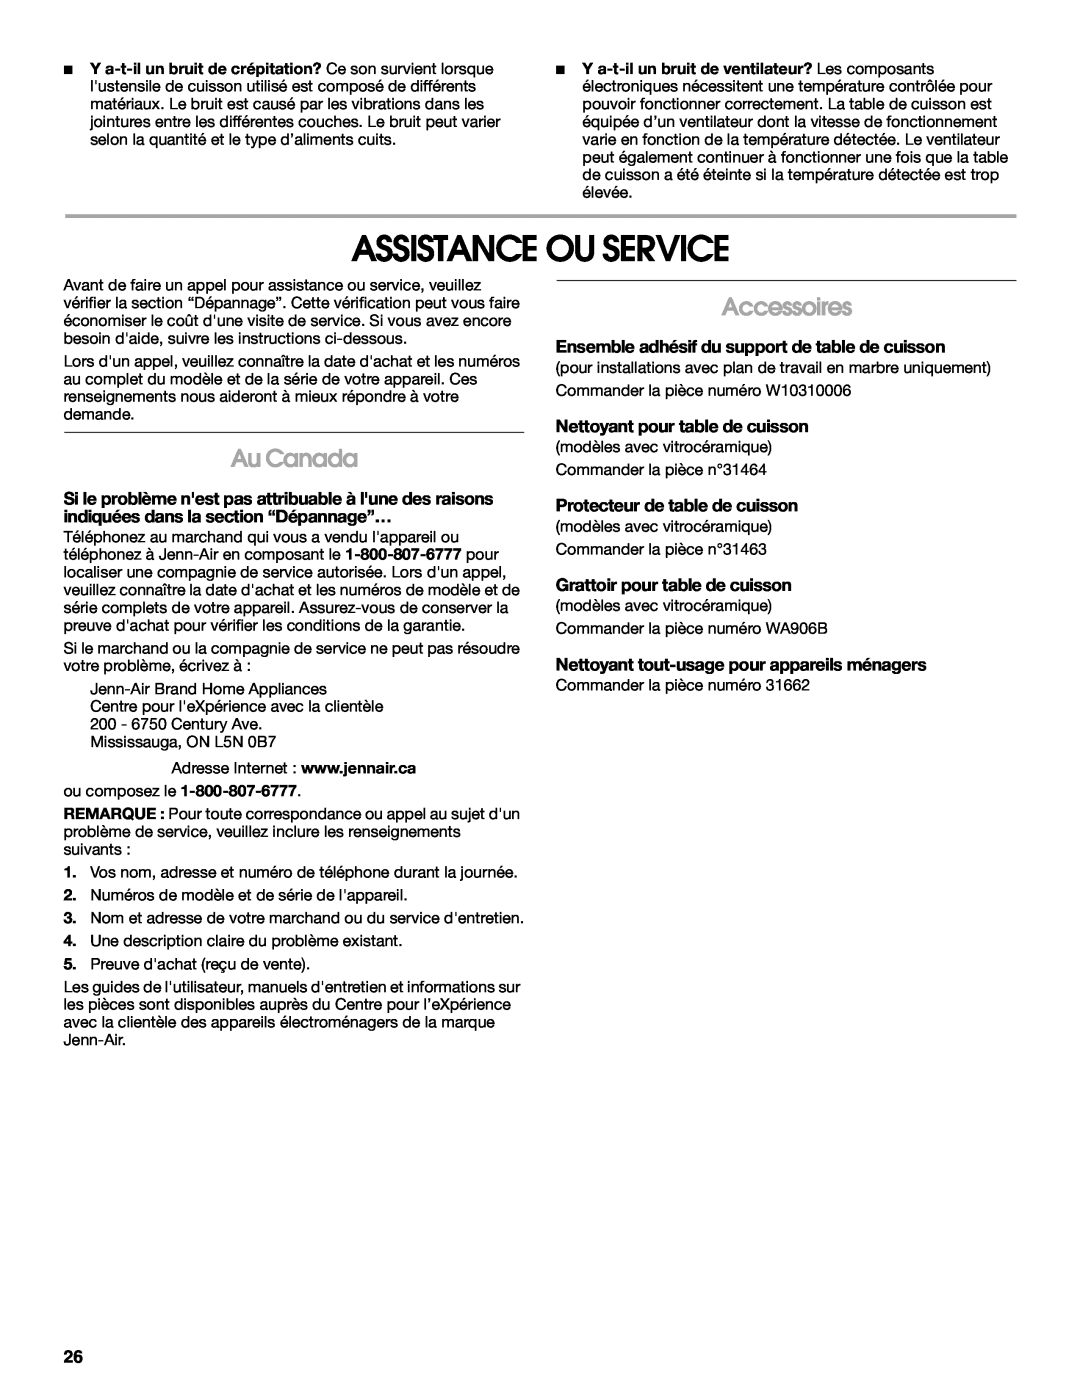 Jenn-Air JIC4430X manual Assistance Ou Service, Au Canada, Accessoires, Ensemble adhésif du support de table de cuisson 